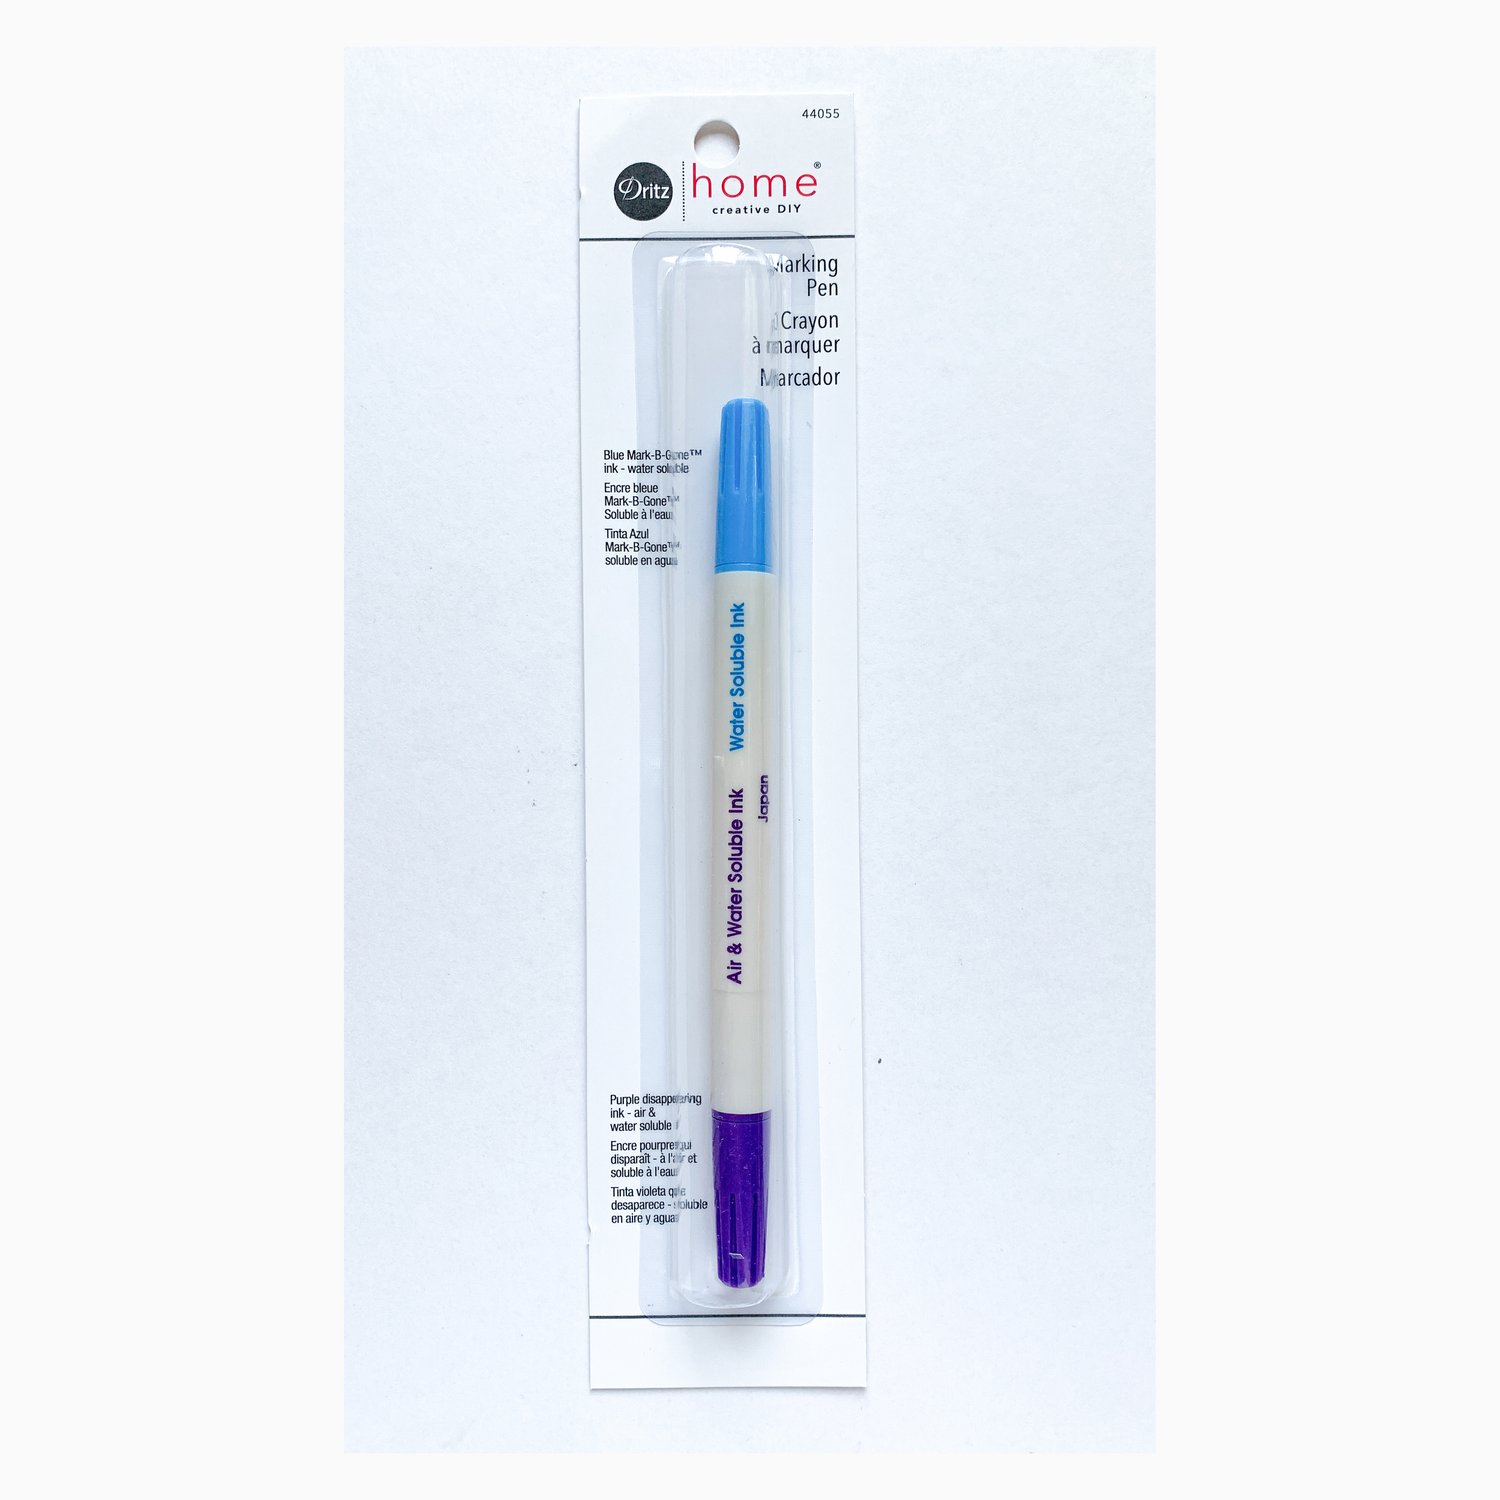 Dritz Disappearing Ink Marking Pen - Purple 